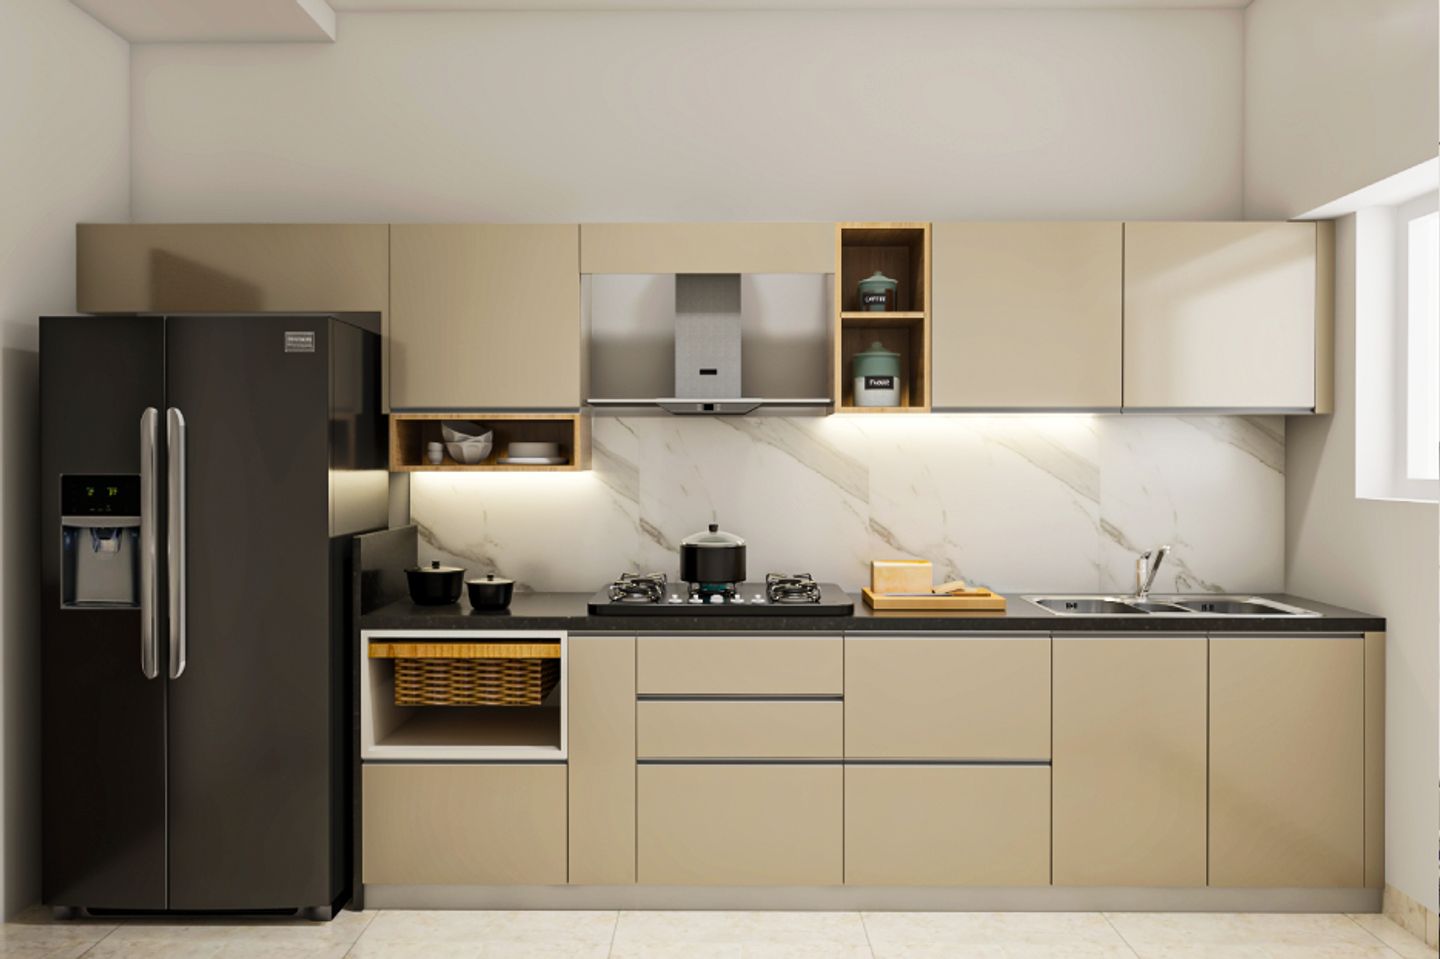 Straight Kitchen Design With Metallic Beige Storage Units - Livspace